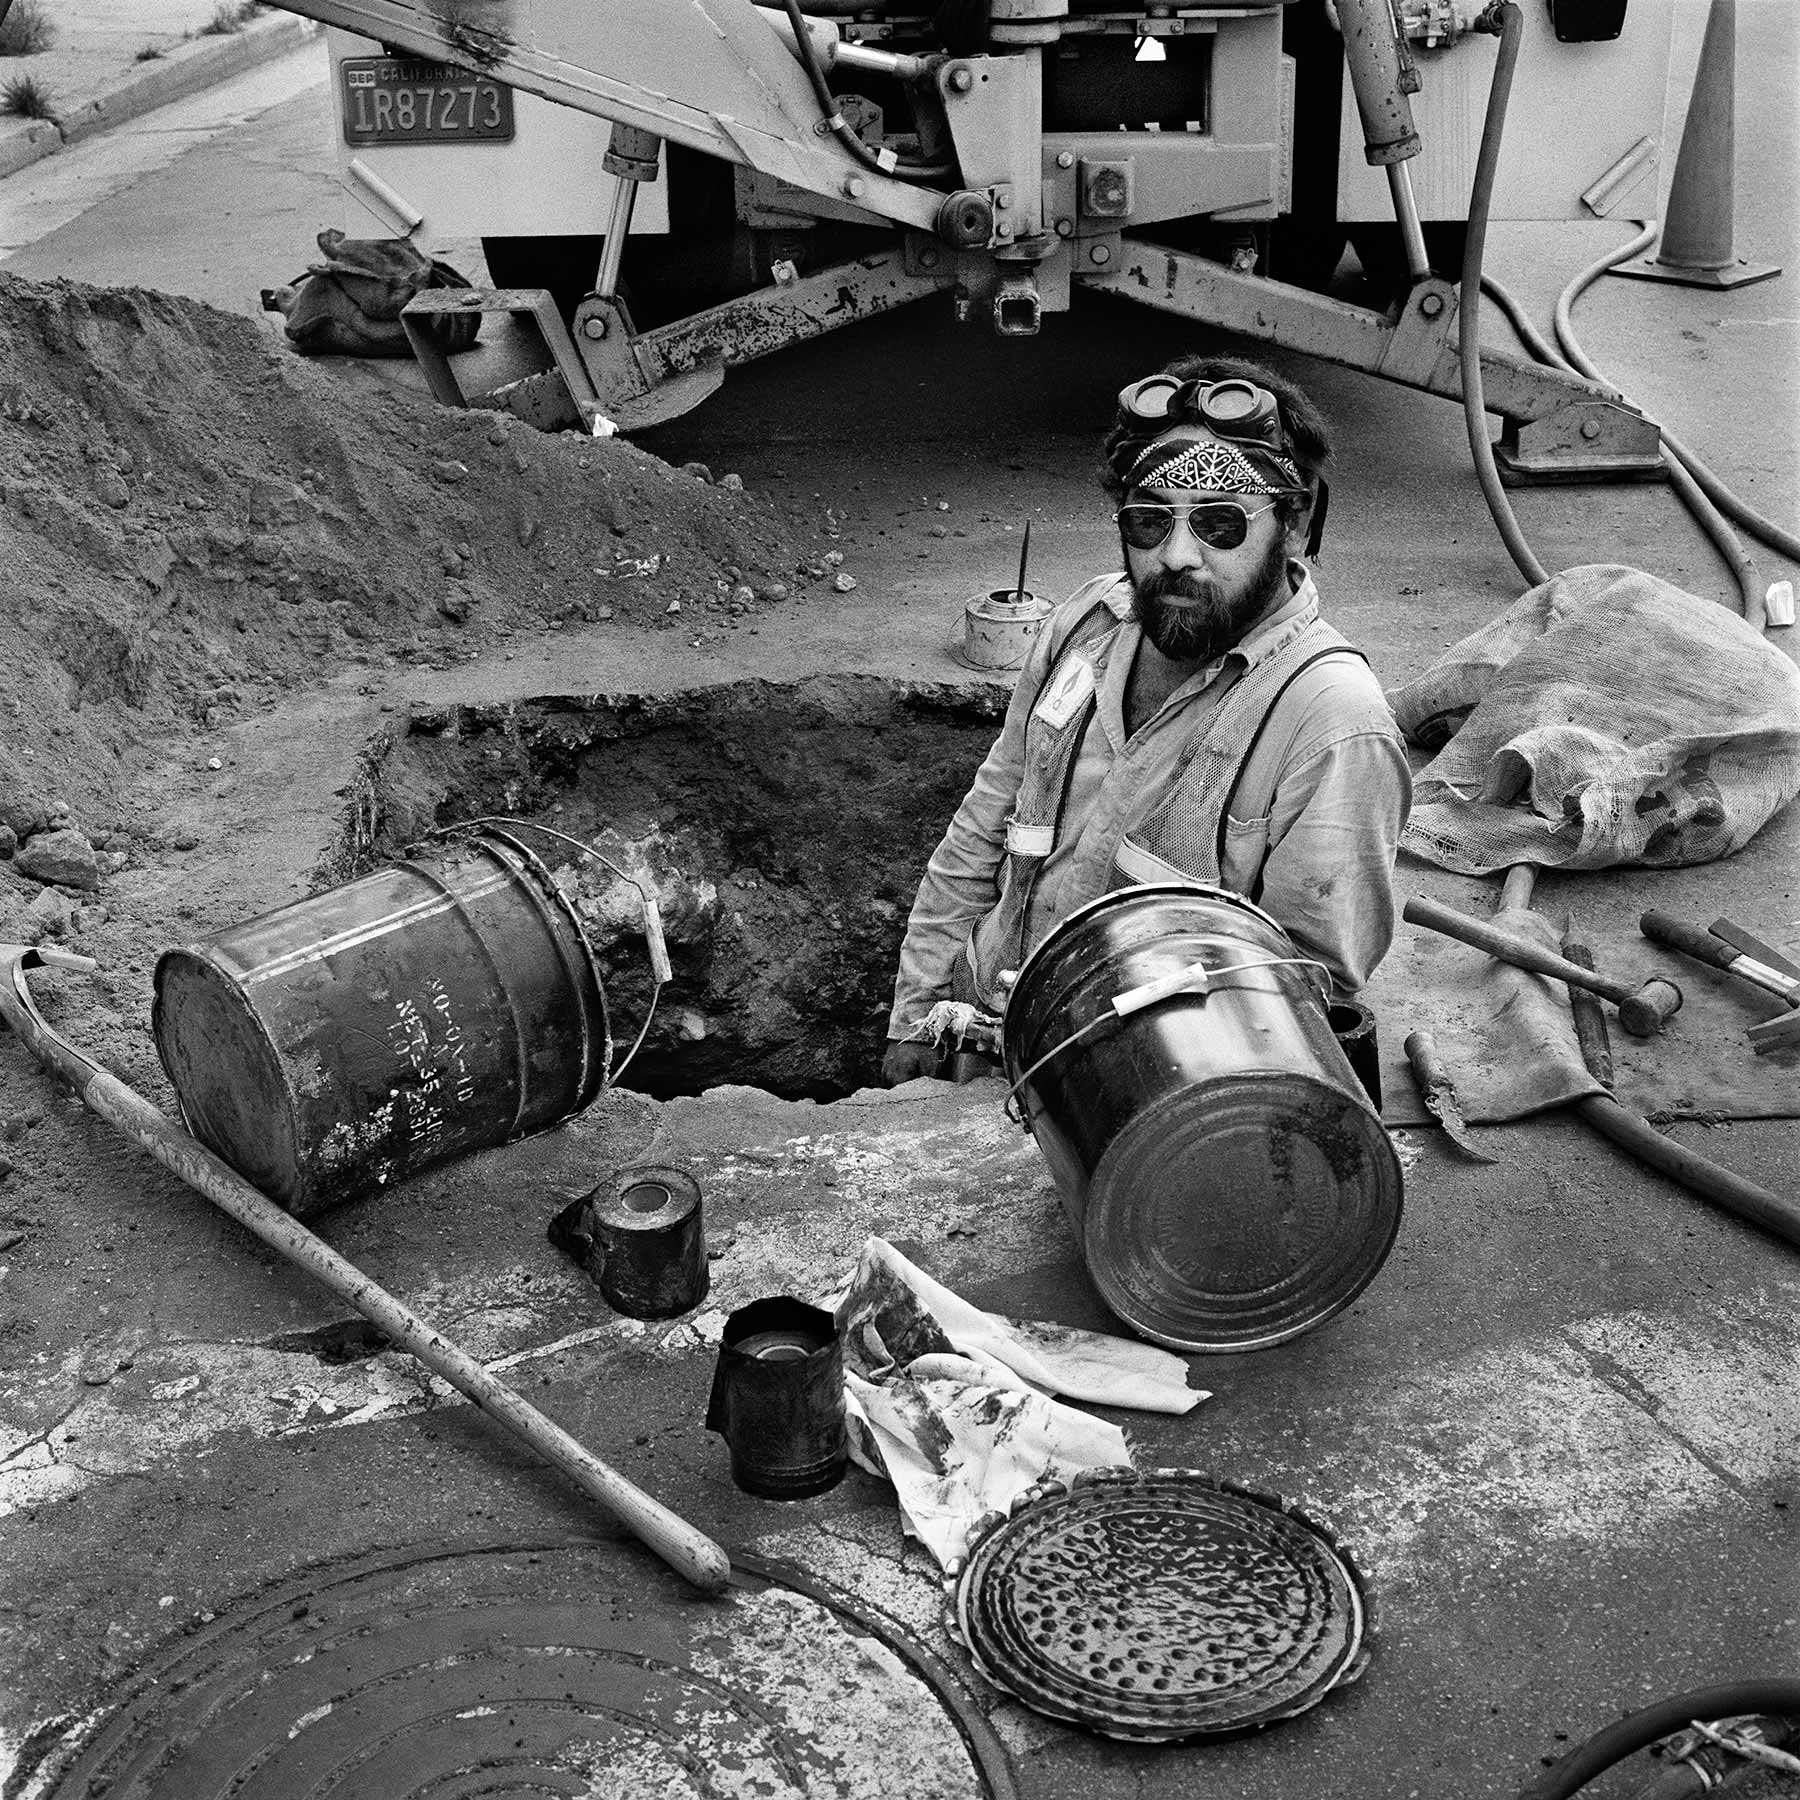 Employé du gaz – Arts District, Los Angeles, Californie, 1983